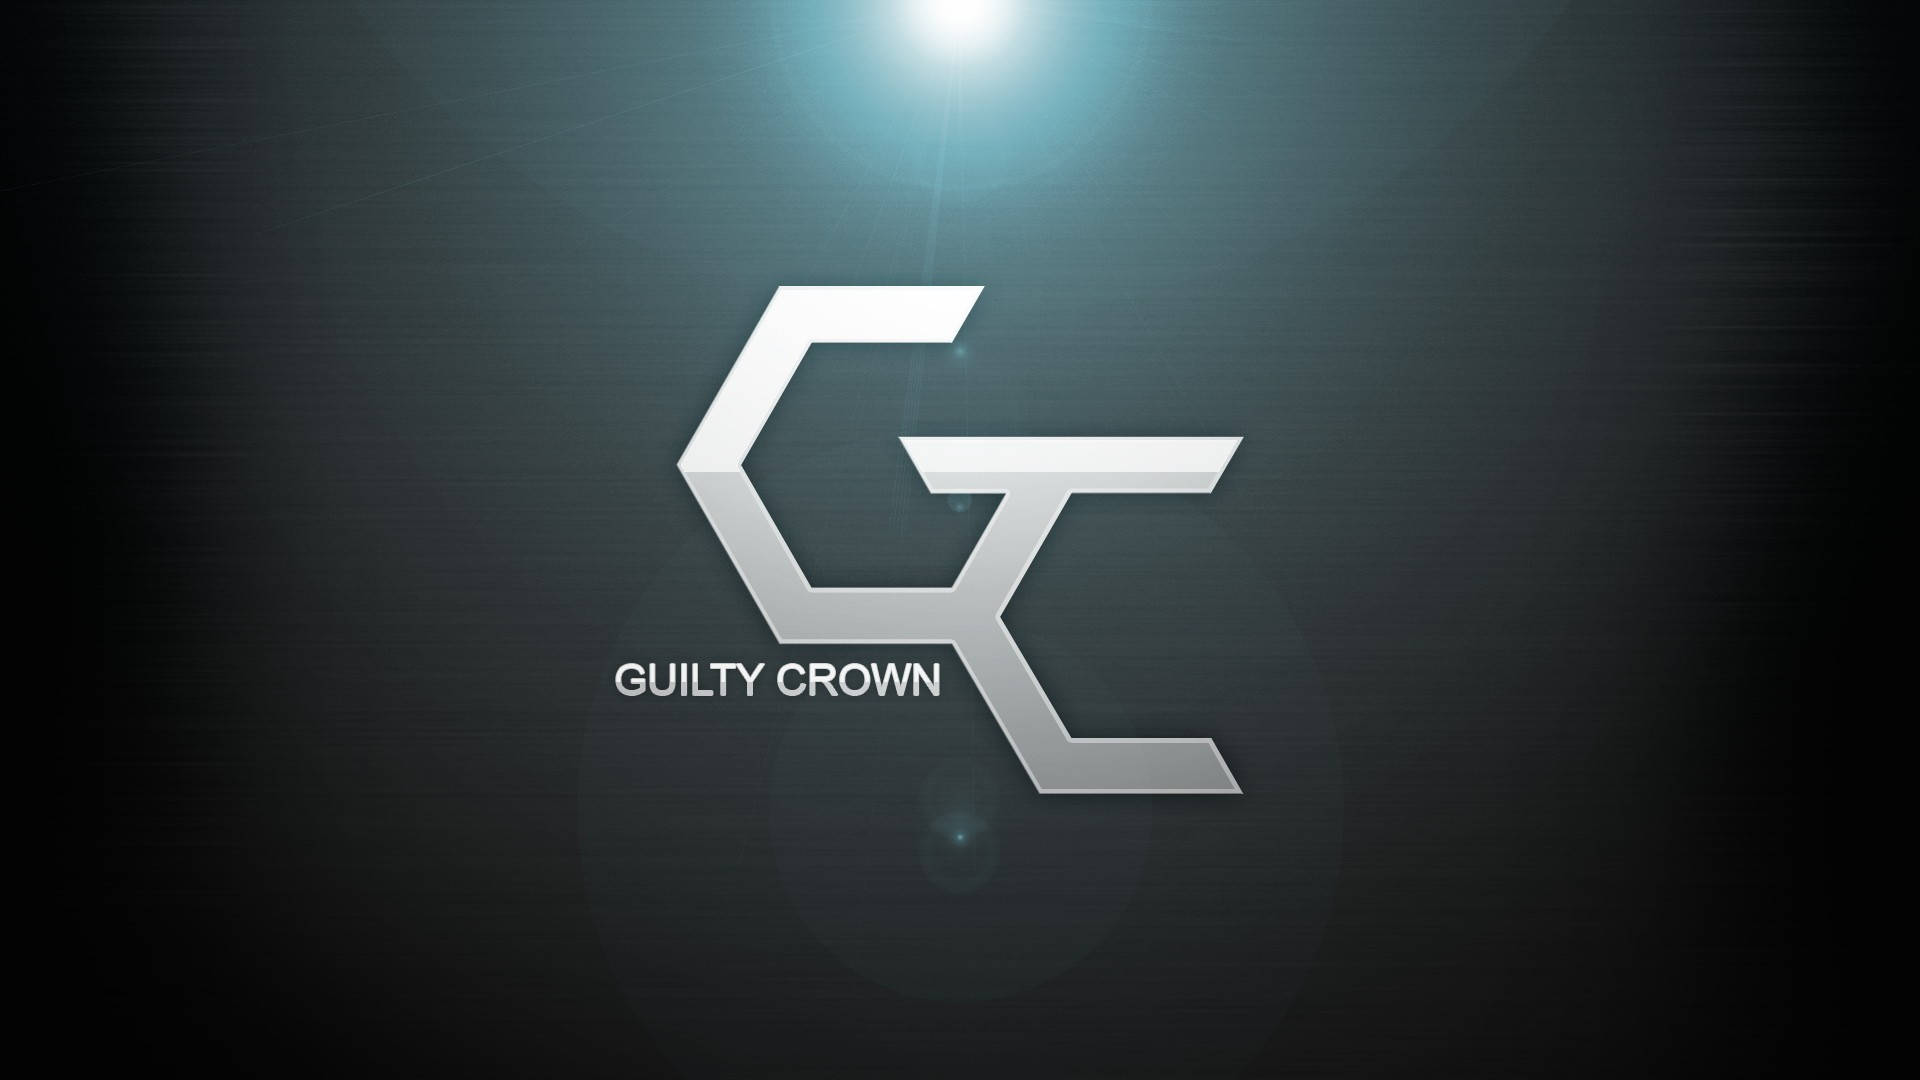 guilty-crown